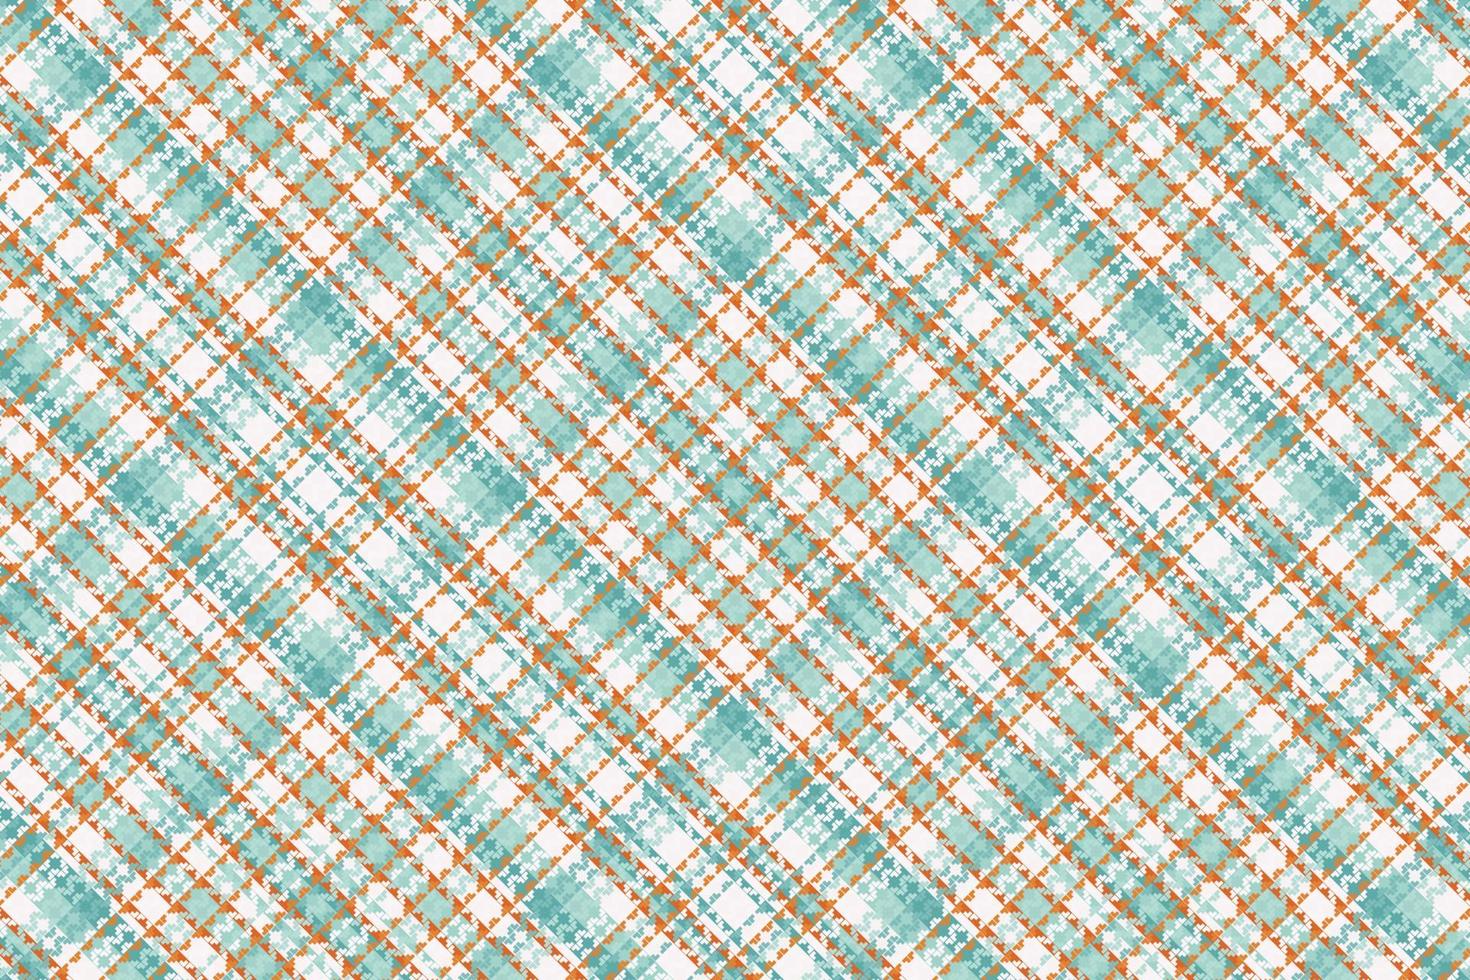 patrón de tela escocesa de tartán con textura y color retro. vector